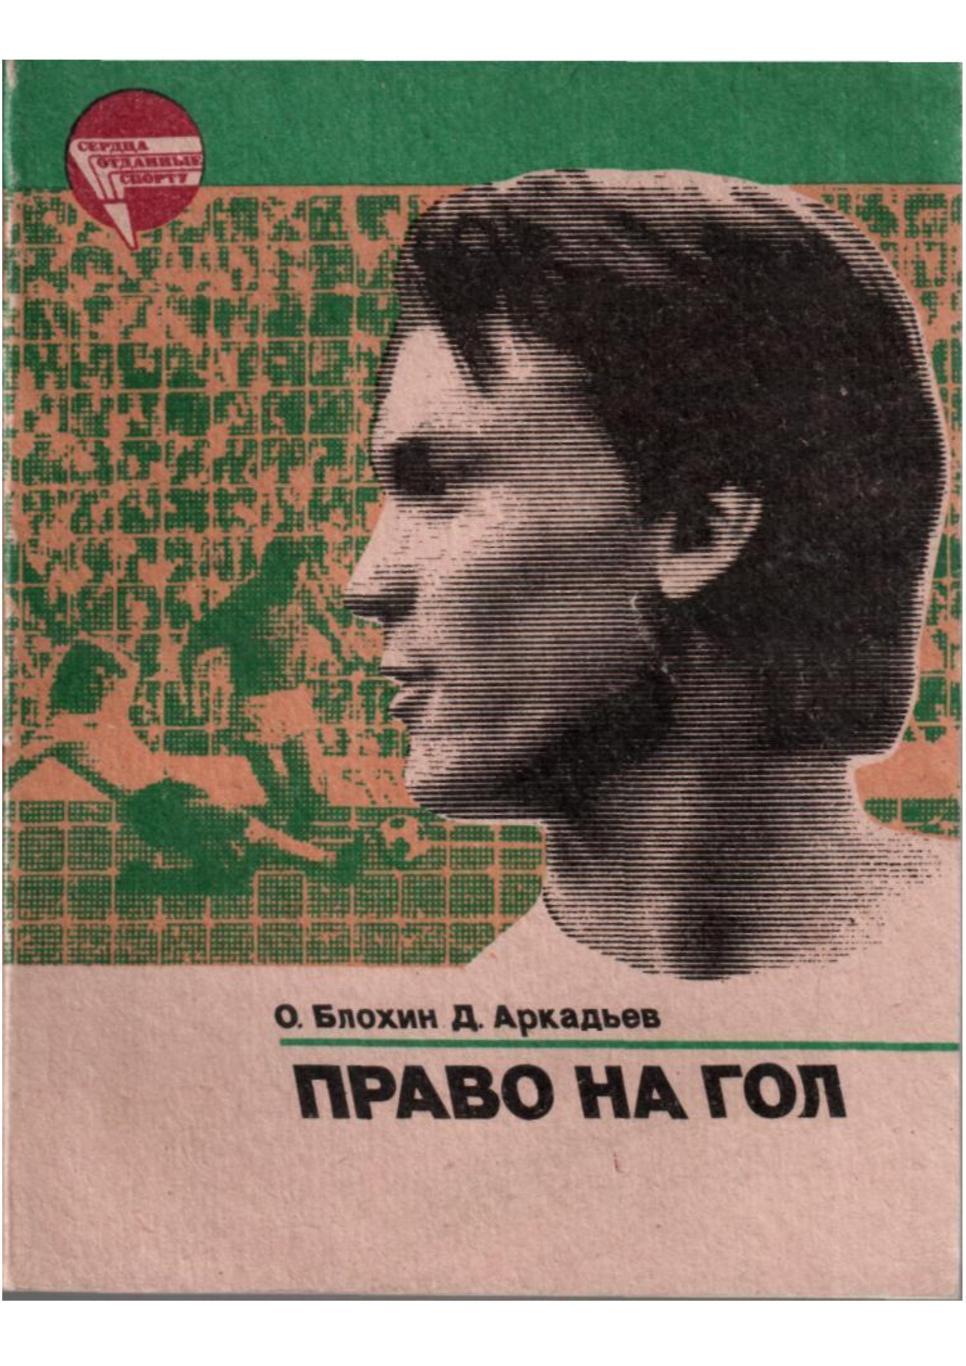 О. Блохин Д. Аркадьев. Право на гол. Москва, 1984.